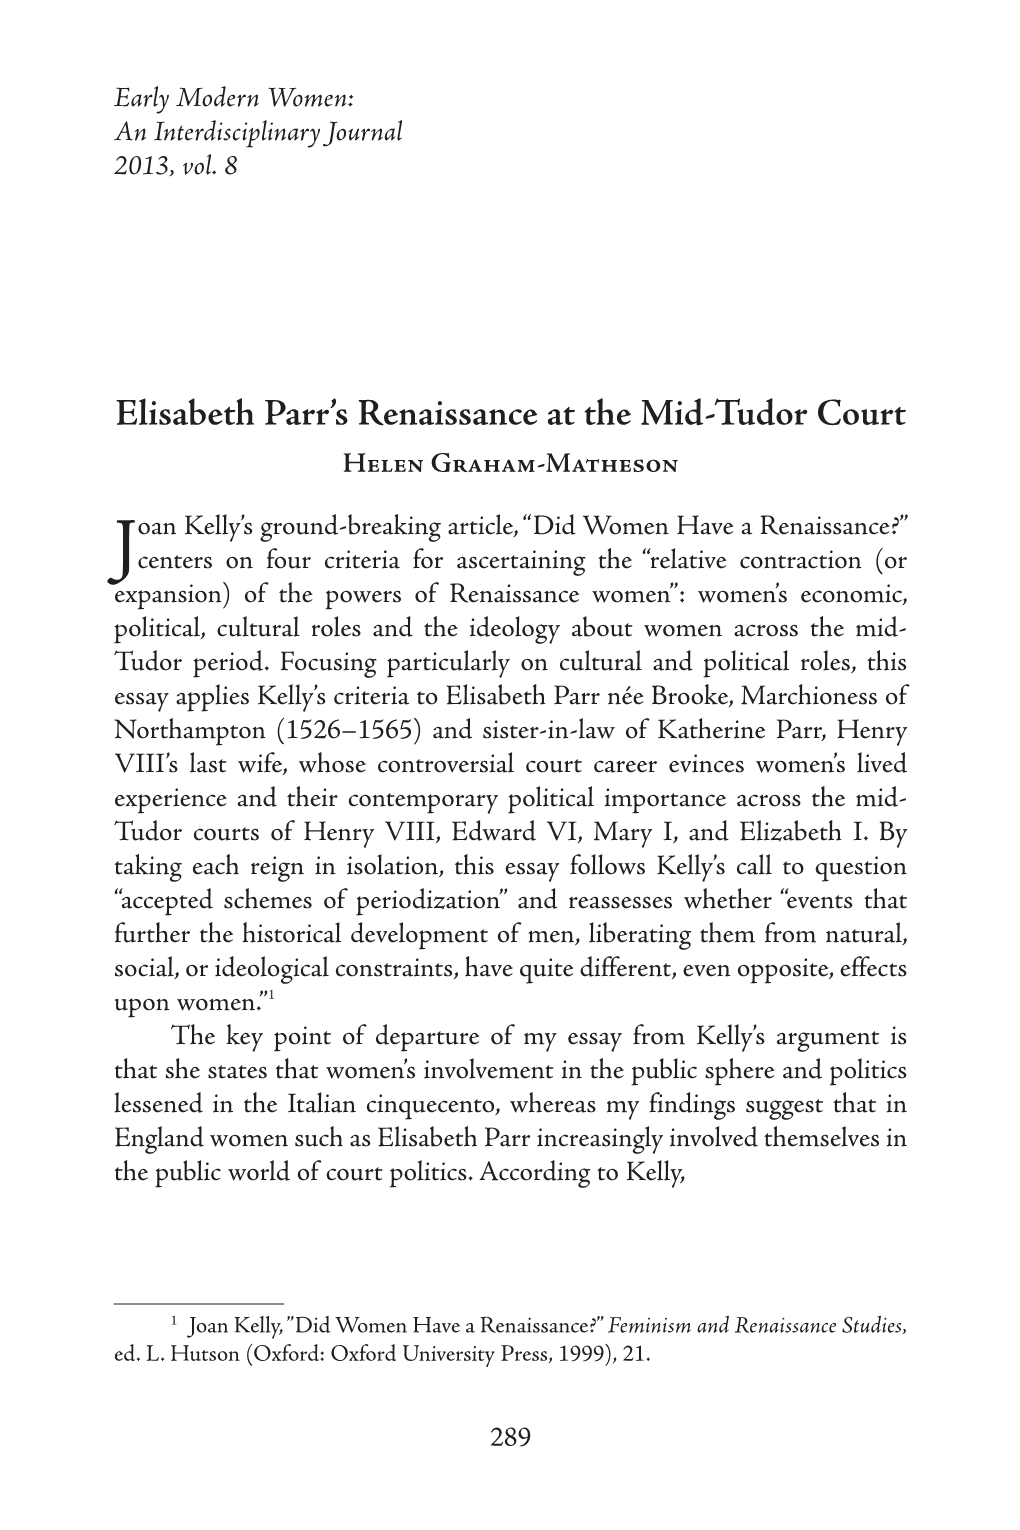 Elisabeth Parr's Renaissance at the Mid-Tudor Court